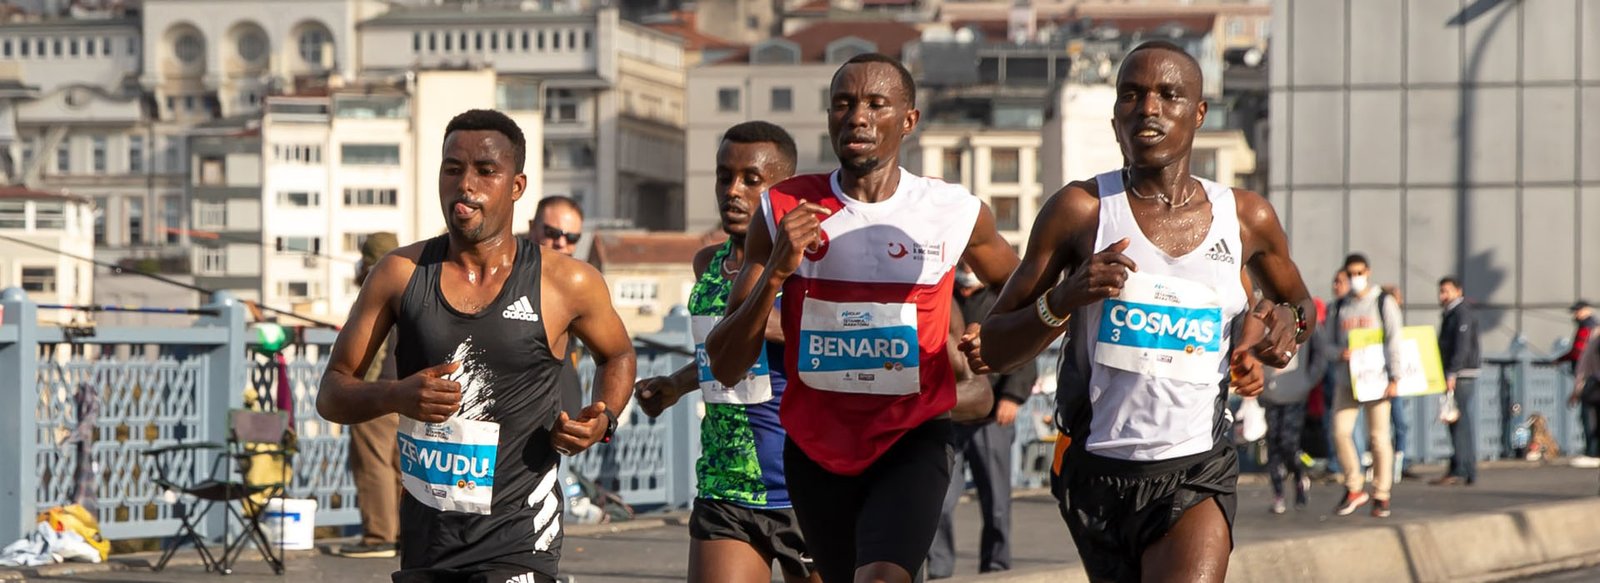 N Kolay İstanbul Maratonu 44. Kez Koşulacak